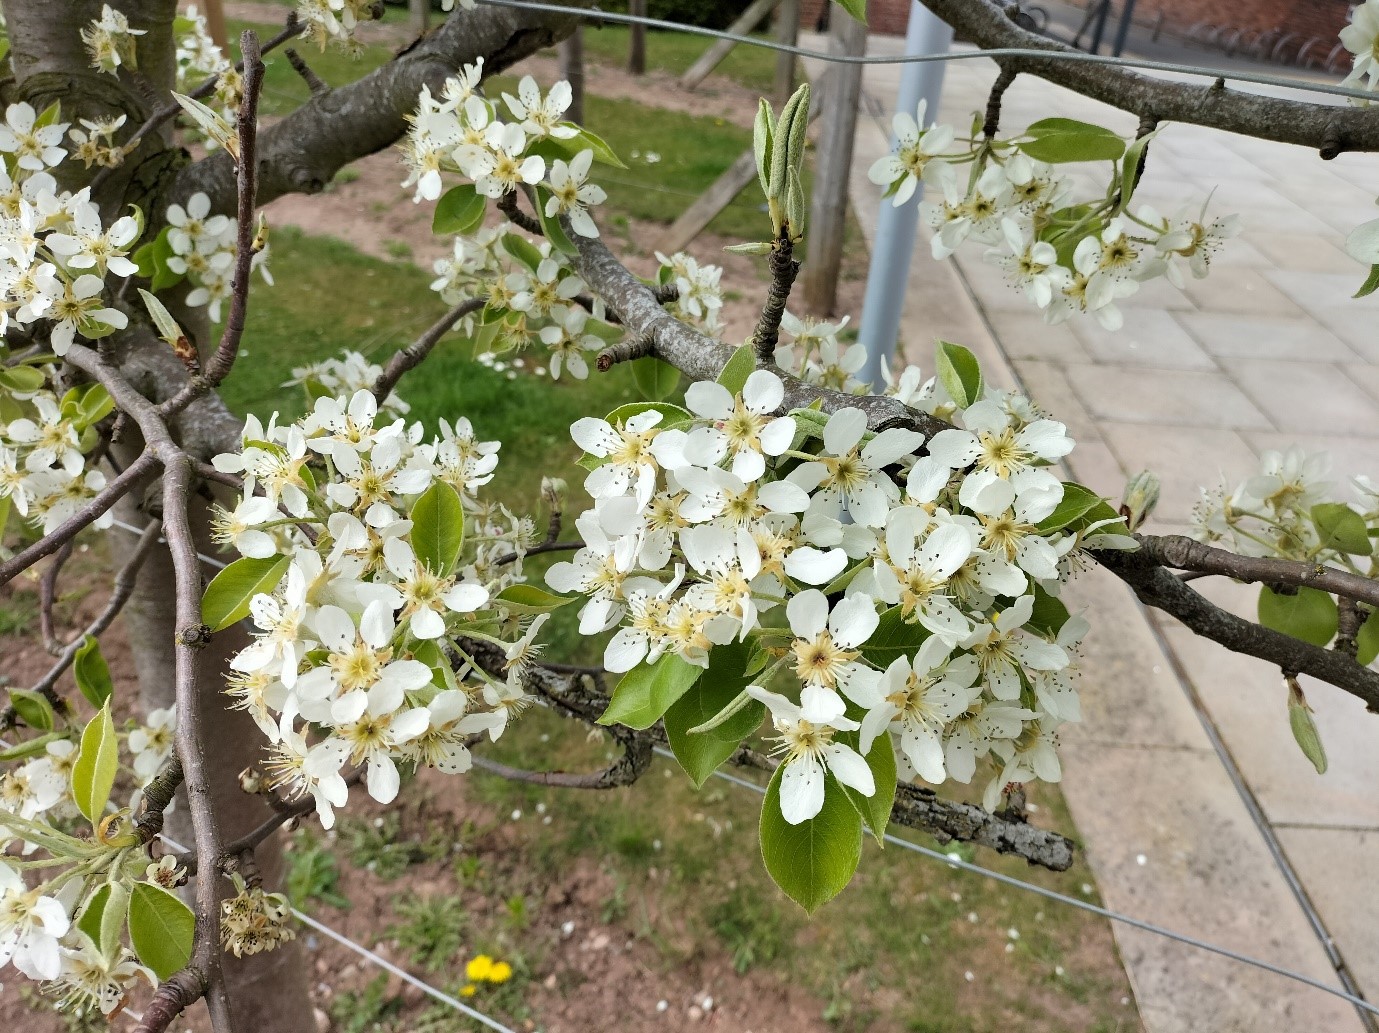 pear tree blossom